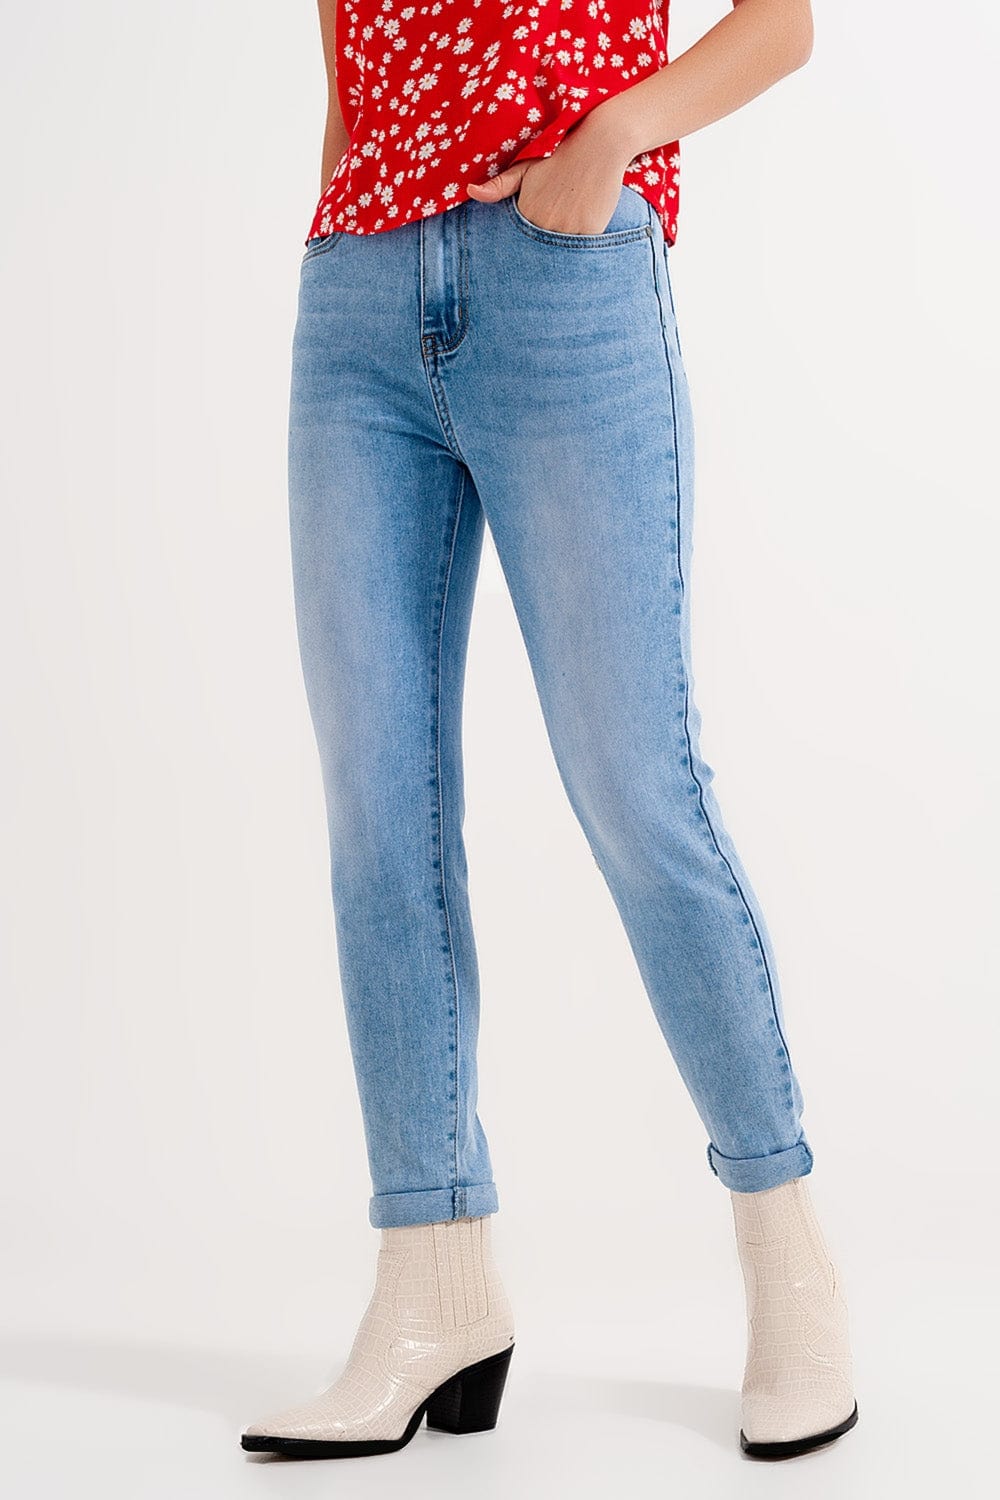 Q2 Women's Jean High Waist Skinny Jeans in Light Blue